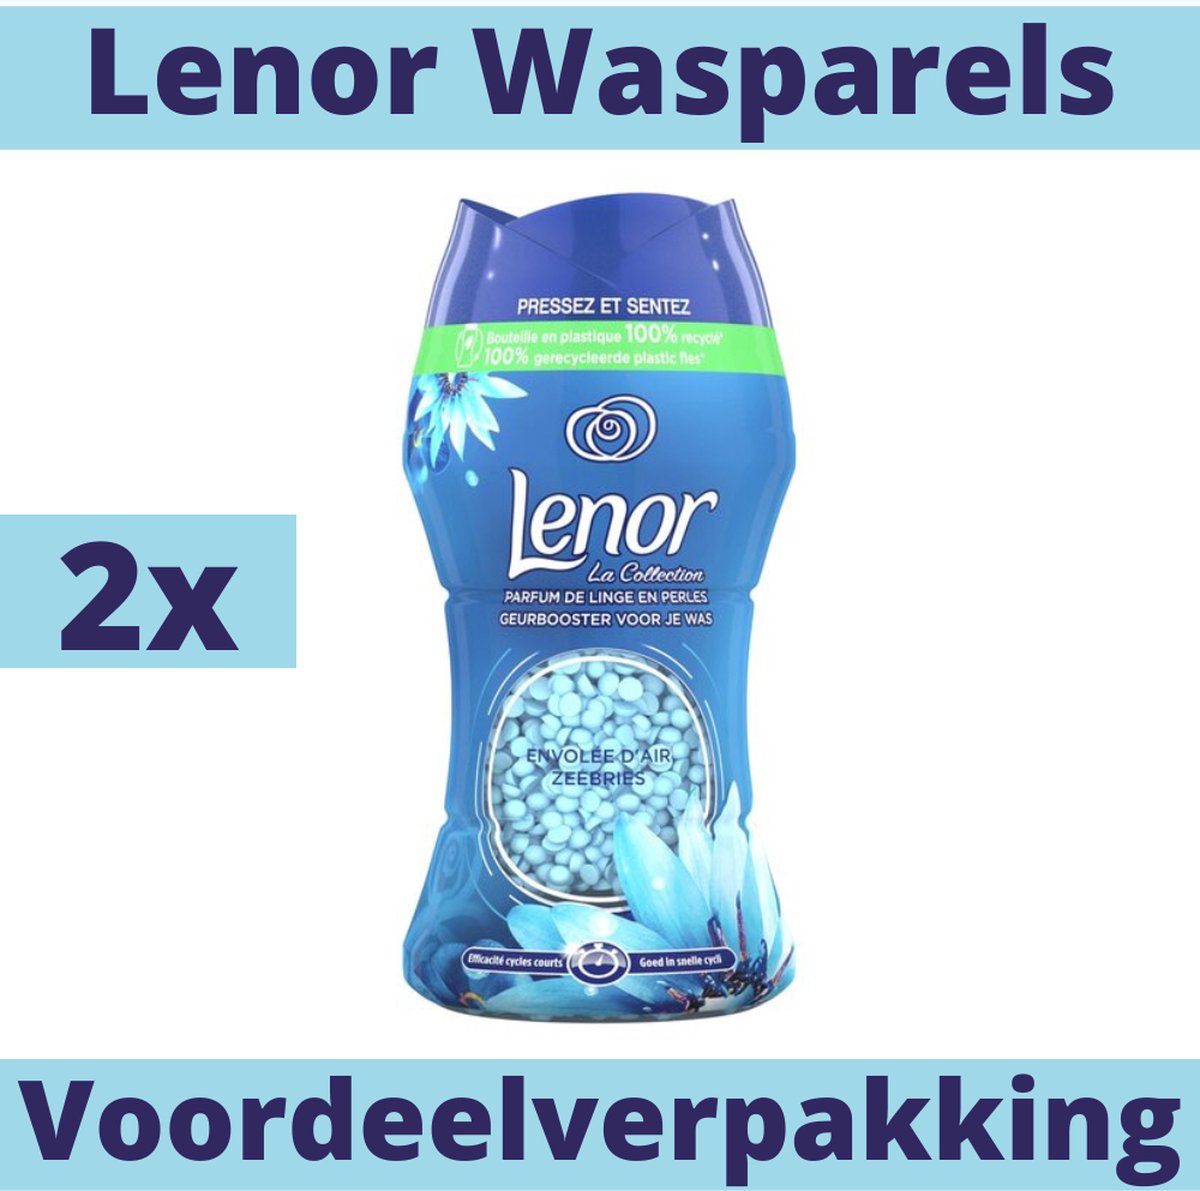 Lenor Wasparels Zeebries - 22 wasbeurten voordeelverpakking - 2x 154g - Wasparels Lenor Unstoppables Alternatief - Wasparels Lenor